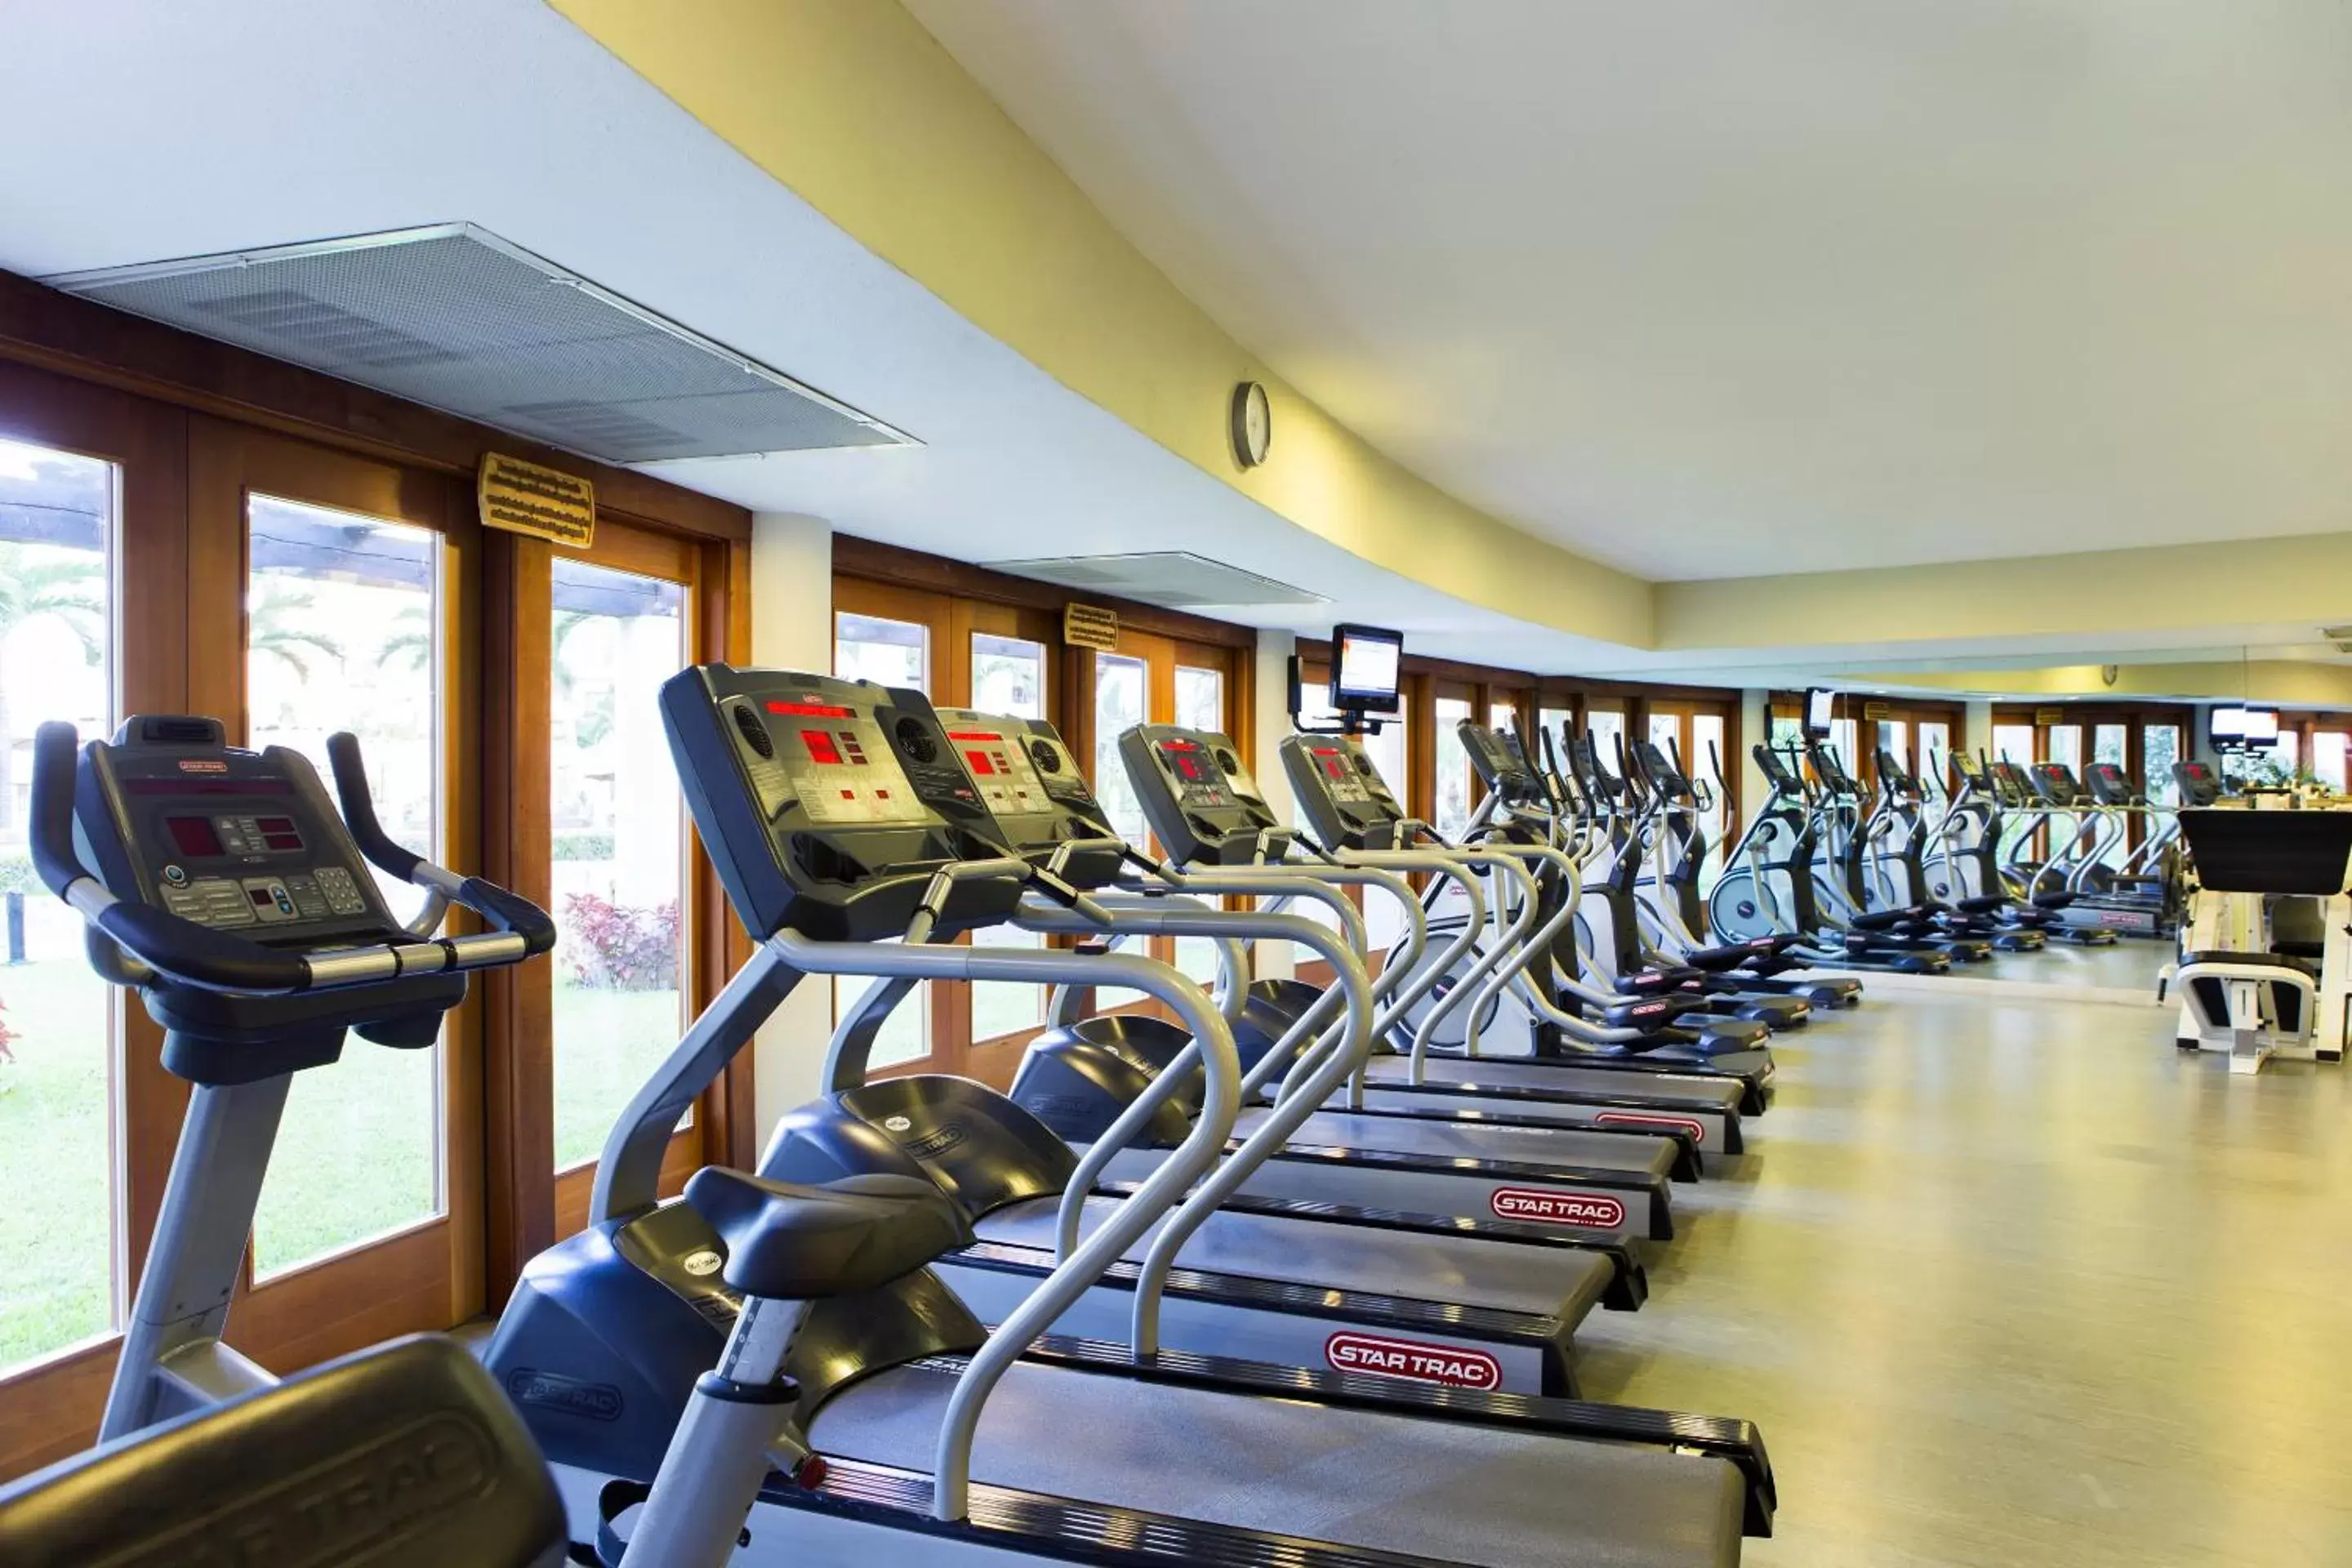 Fitness centre/facilities, Fitness Center/Facilities in Villa la Estancia Beach Resort & Spa